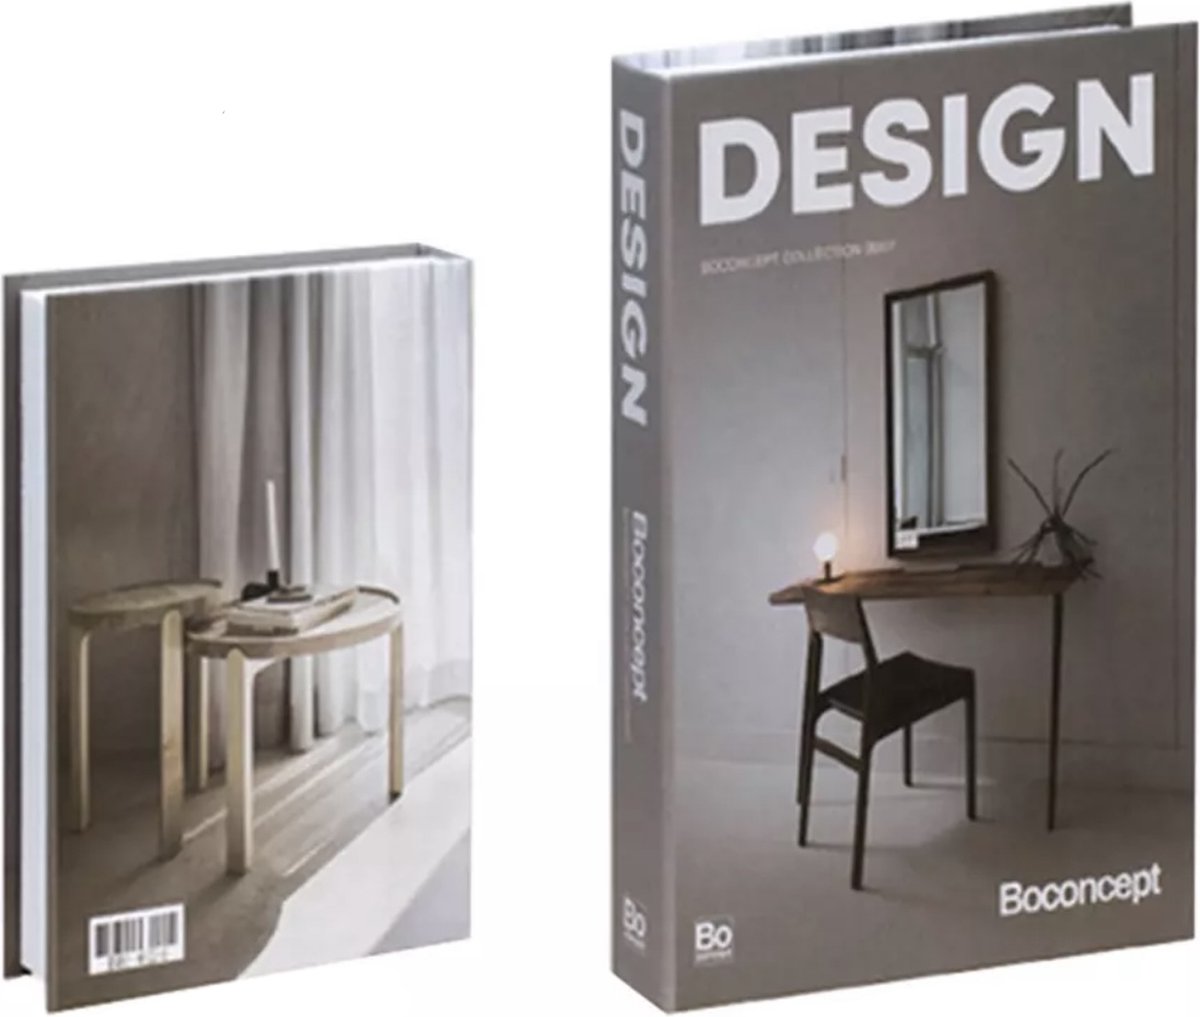 Opberg boek - Design - Beige / grijs - Opbergbox - Opbergdoos - Decoratie woonkamer - Boeken - Nep boek - Opbergboek